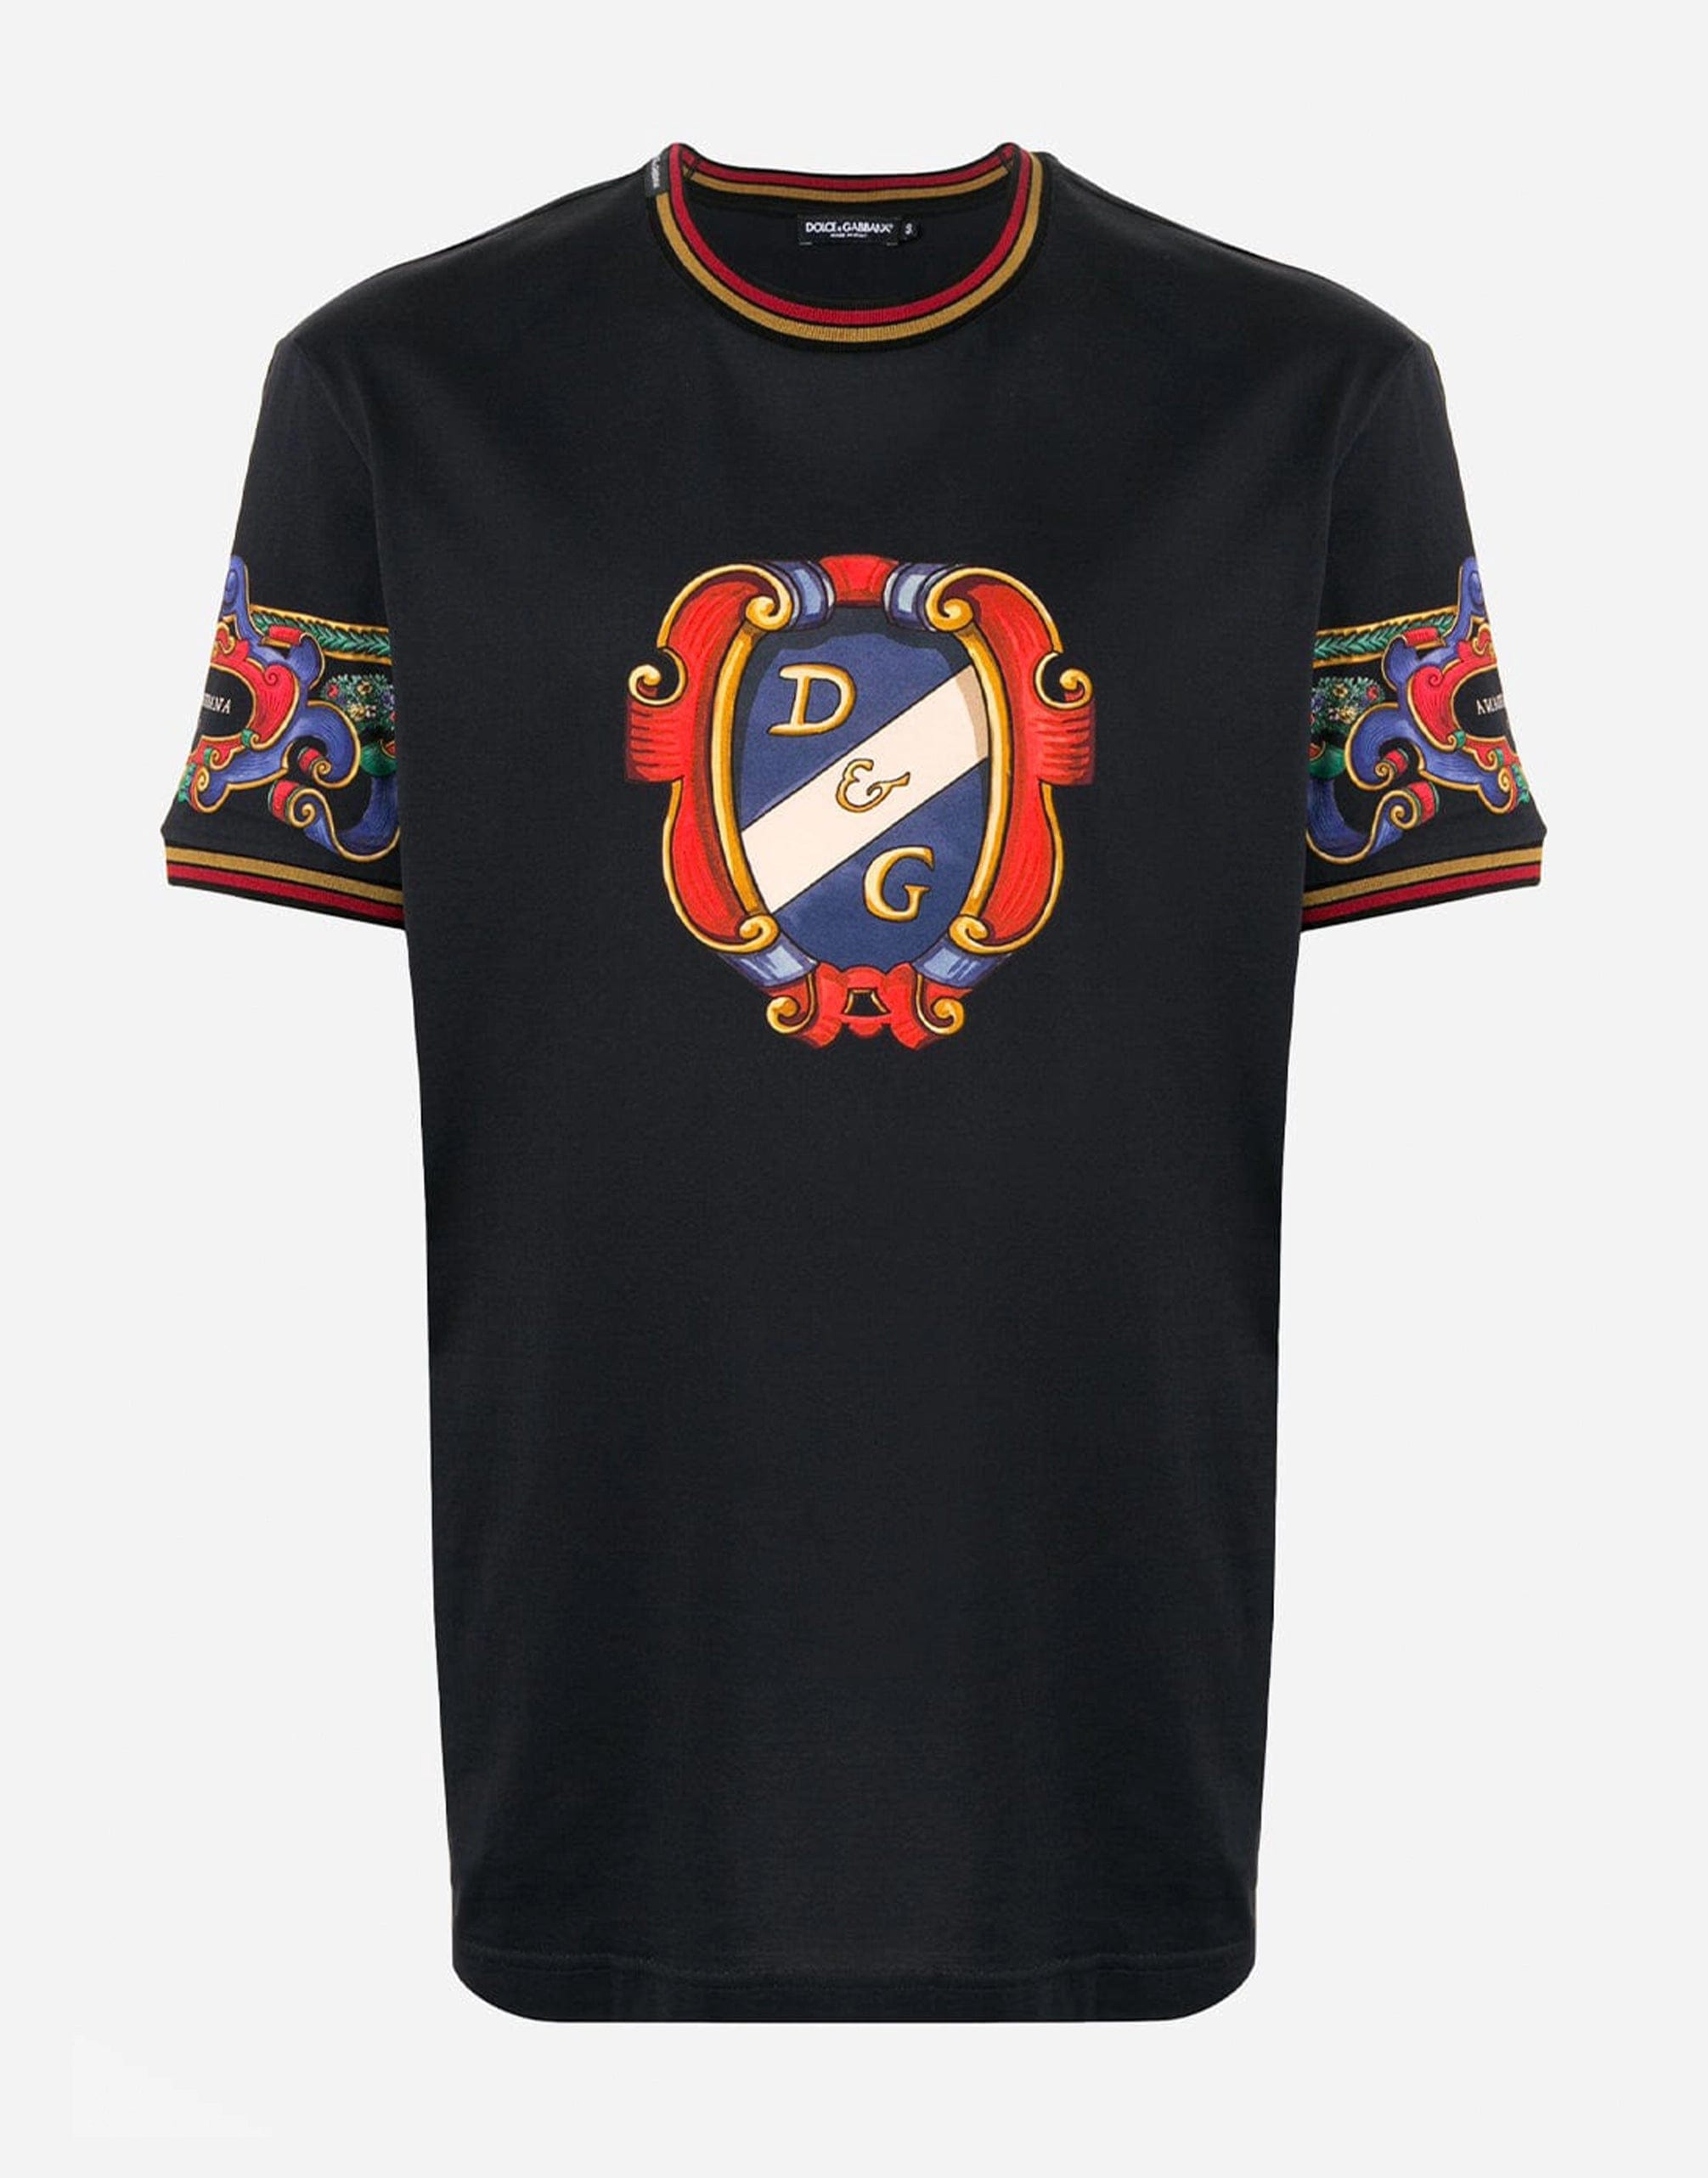 Heraldic Printed Cotton T-Shirt